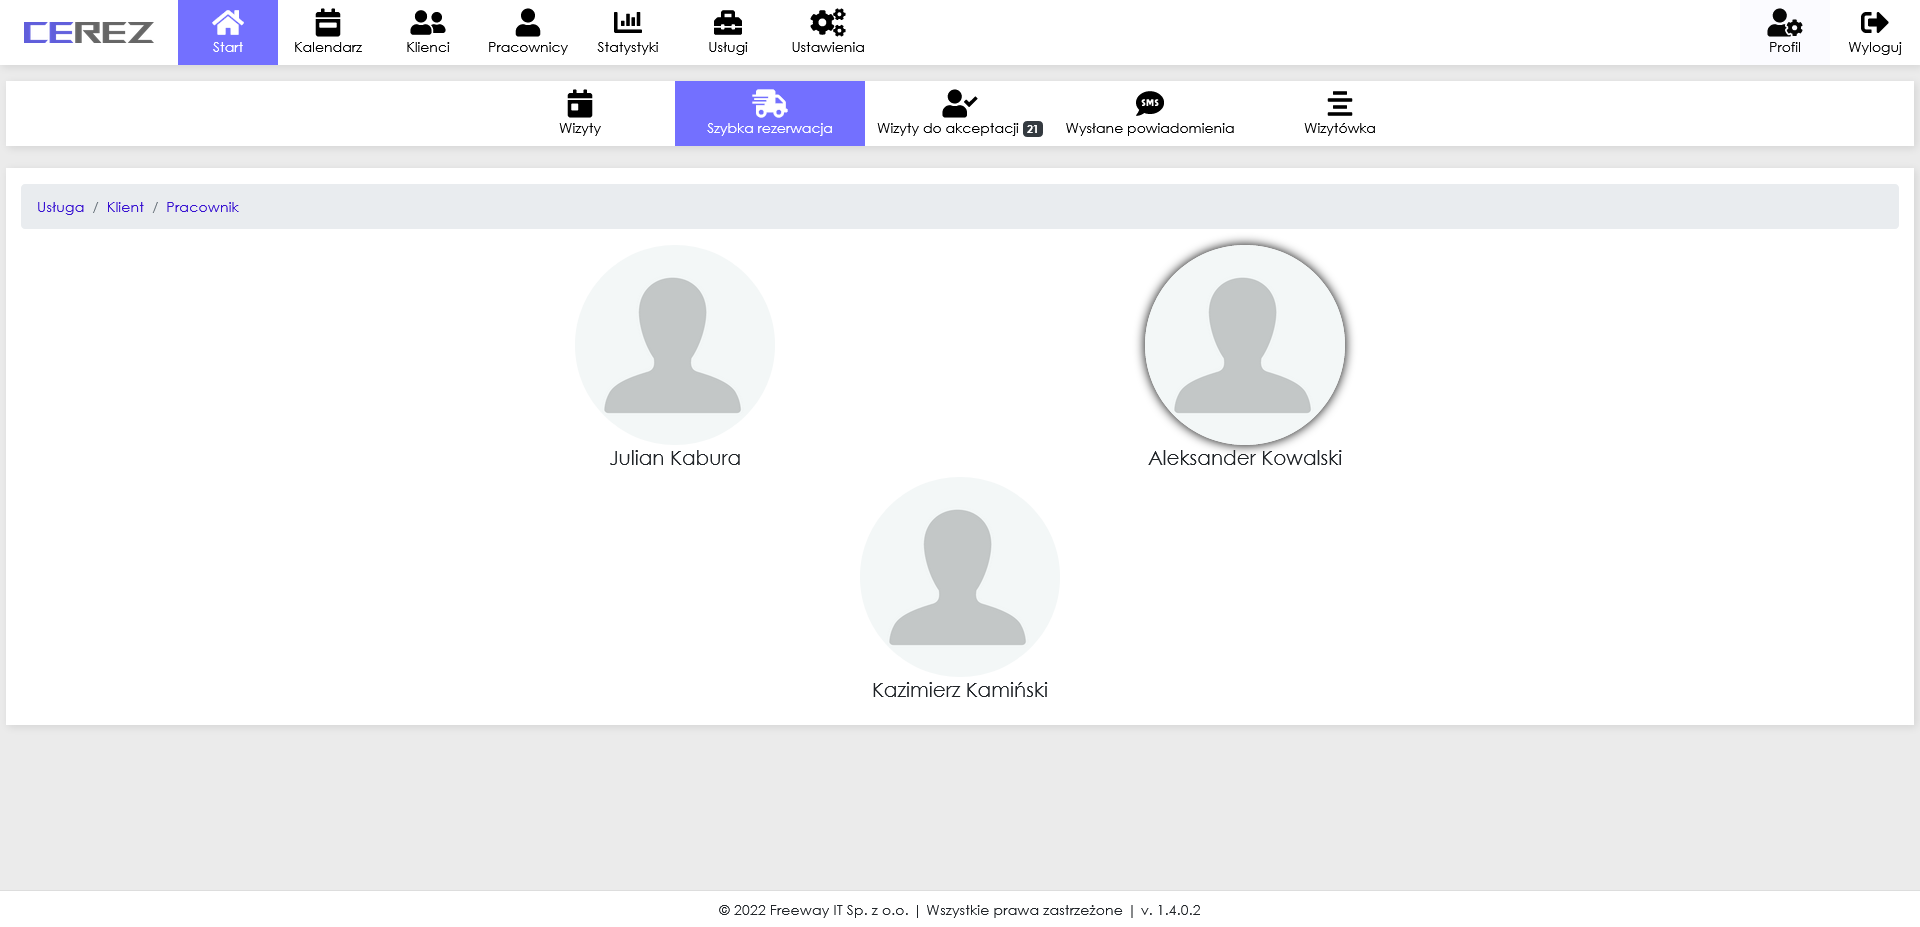 zrzut ekranu szybkiej rezerwacji (wybór pracownika) z aplikacji Cerez